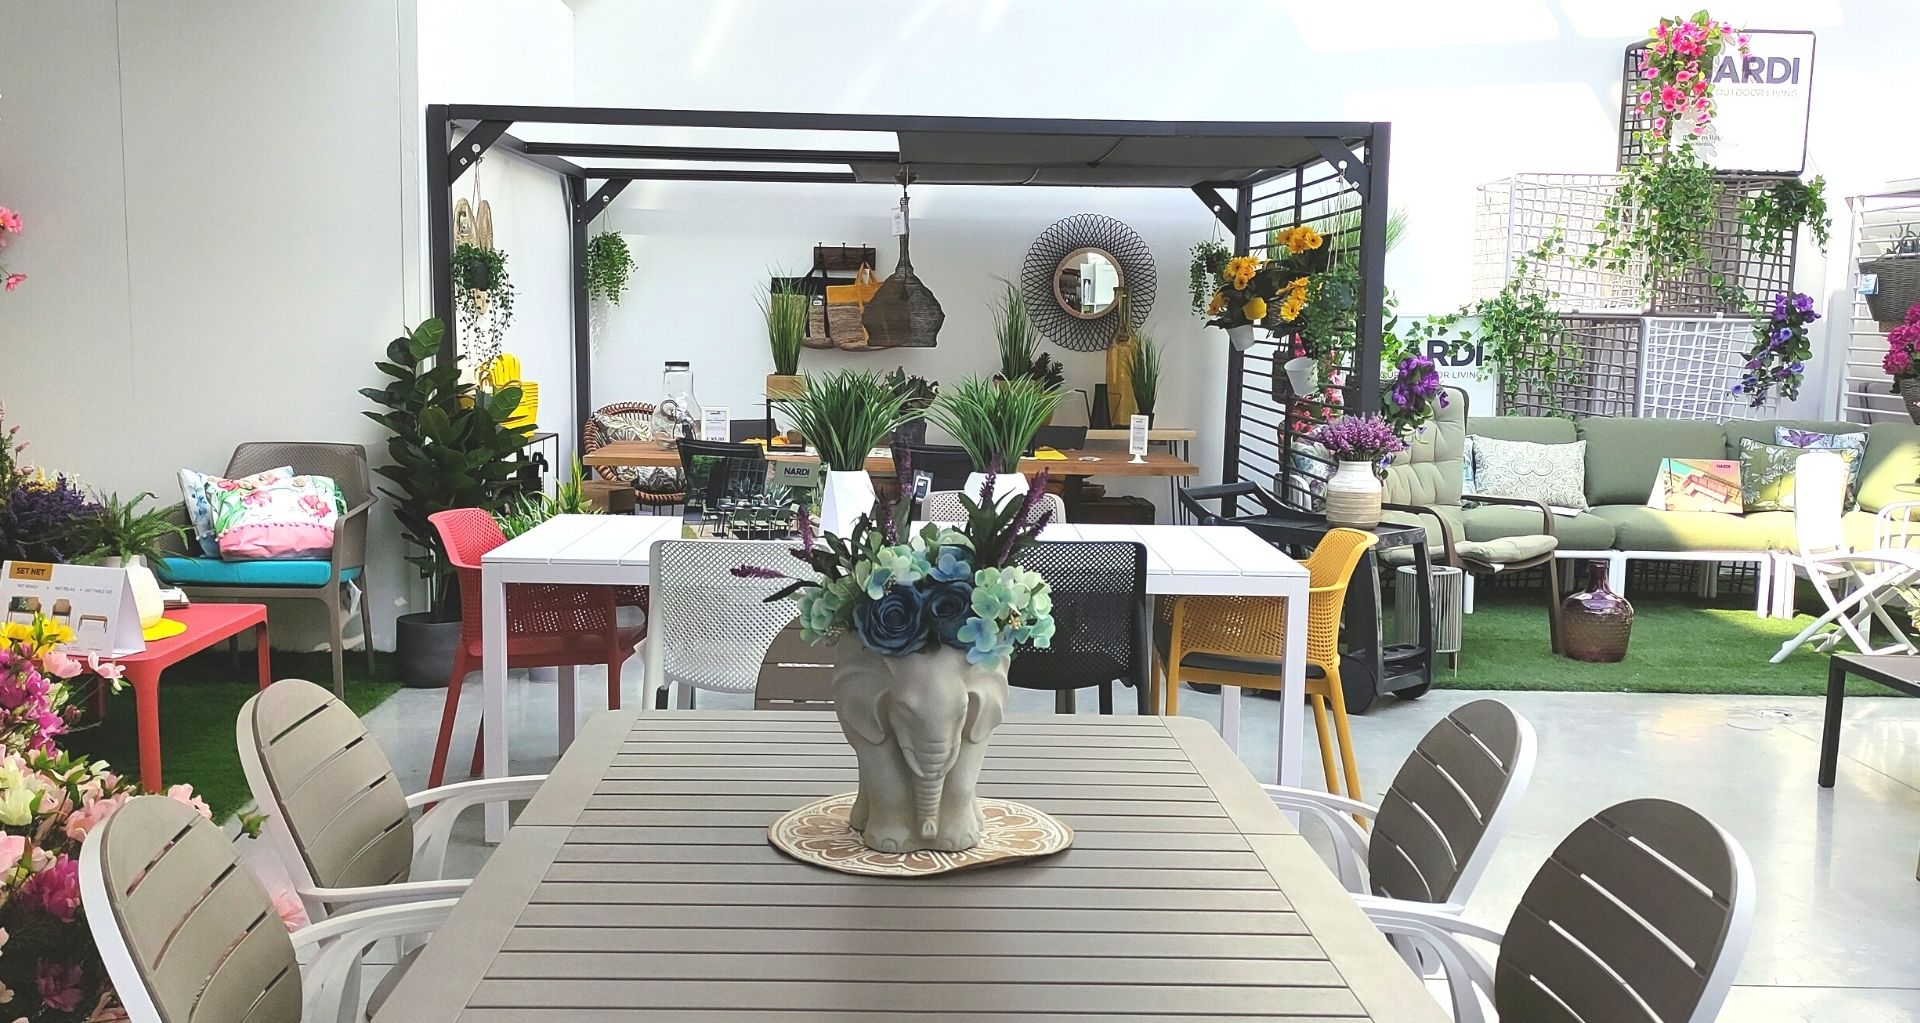 Tavola da giardino: consigli per il tuo tavolo esterno